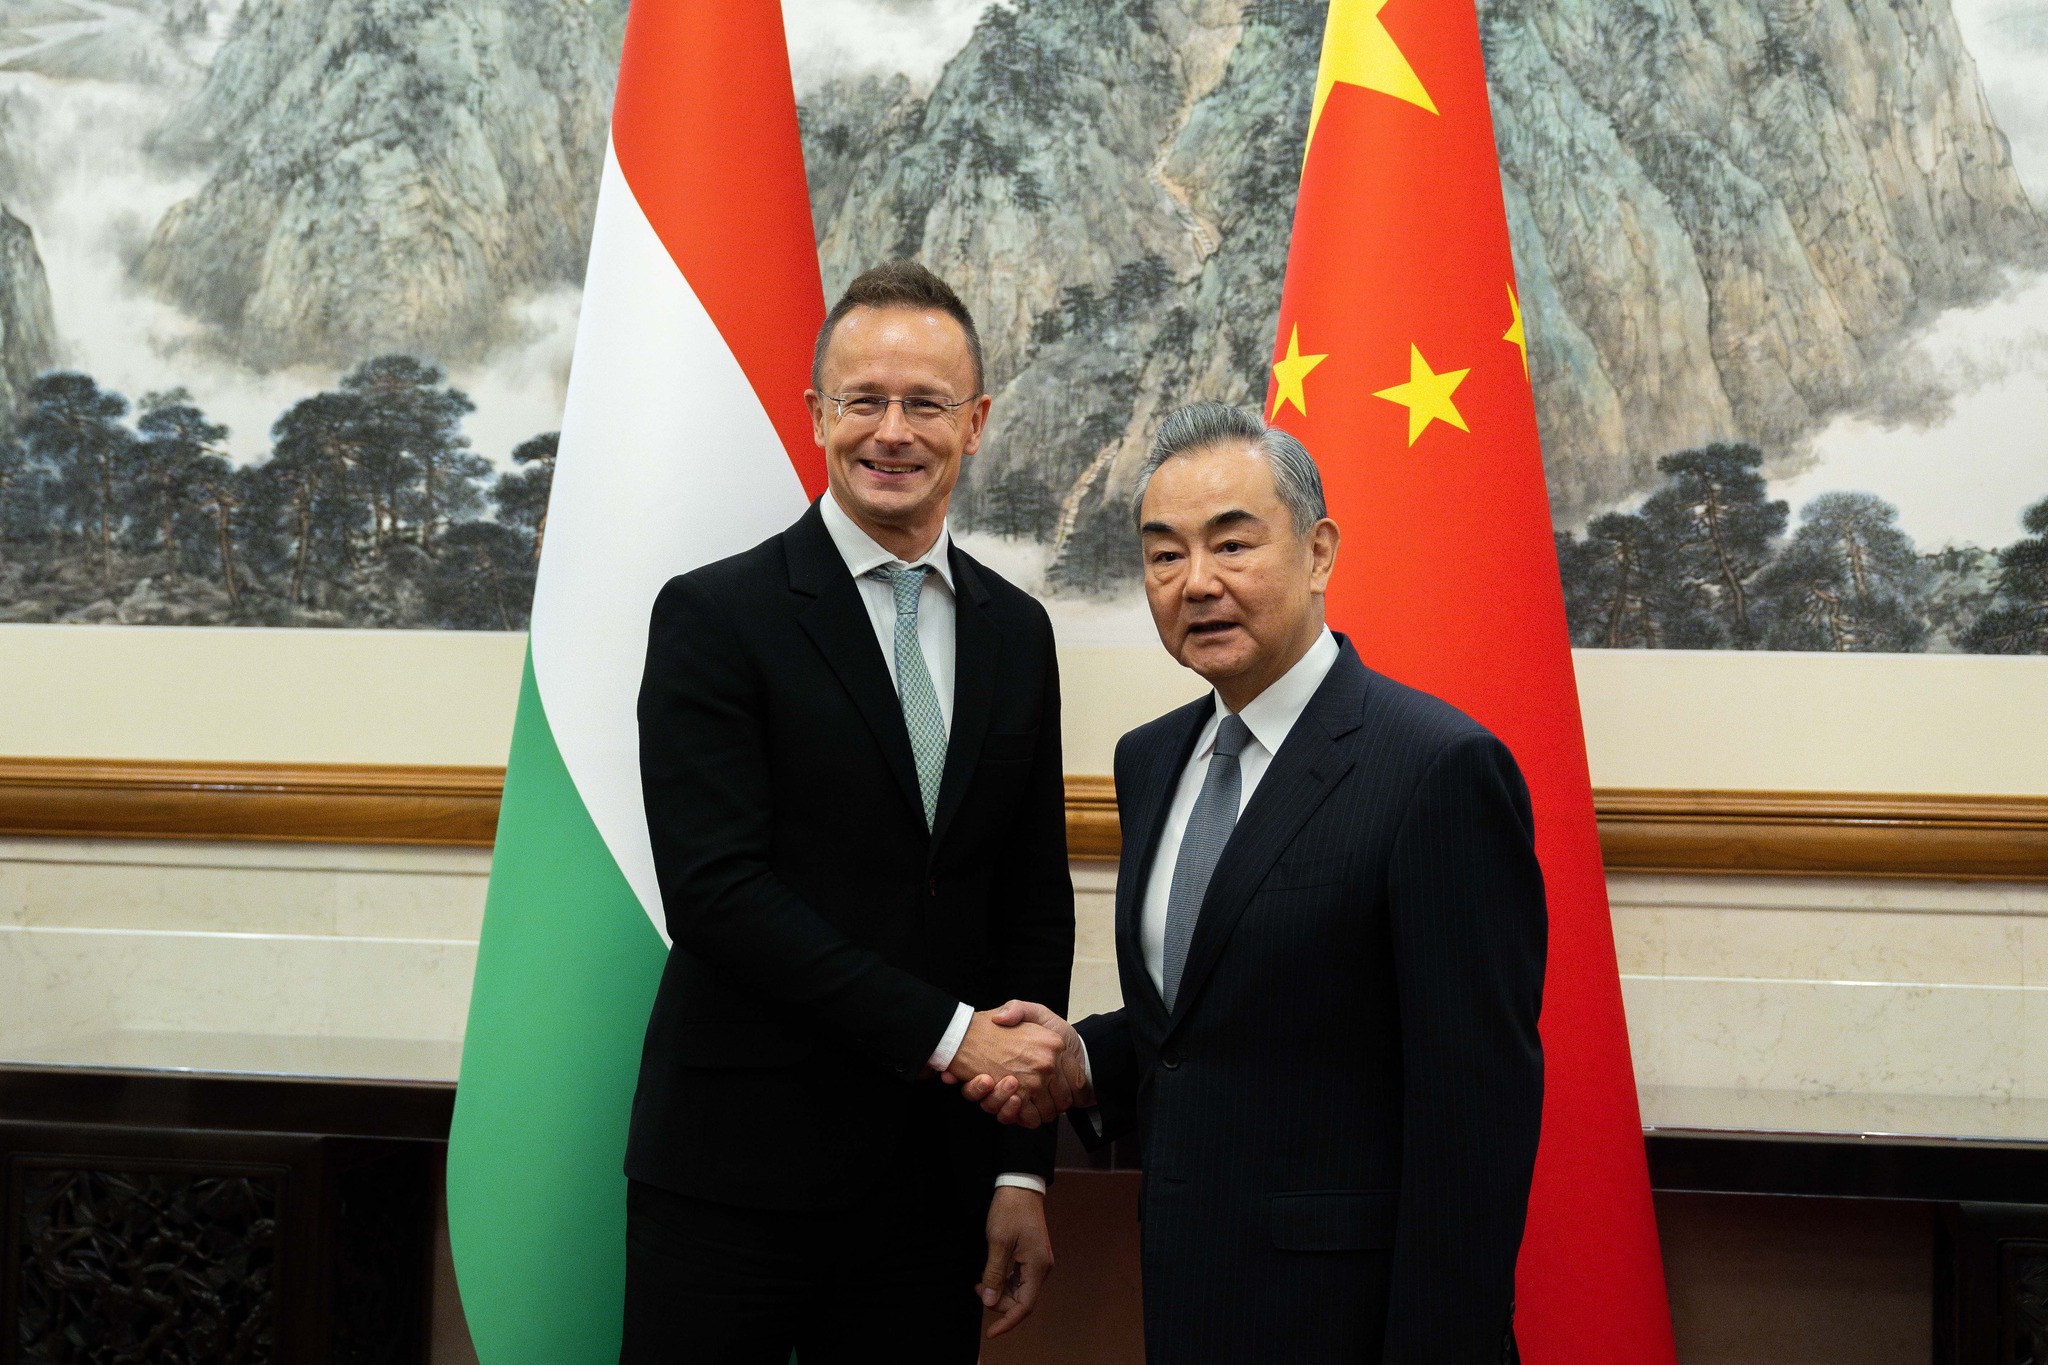 Chinesische Investitionen in Europa werden höchstwahrscheinlich in Ungarn getätigt